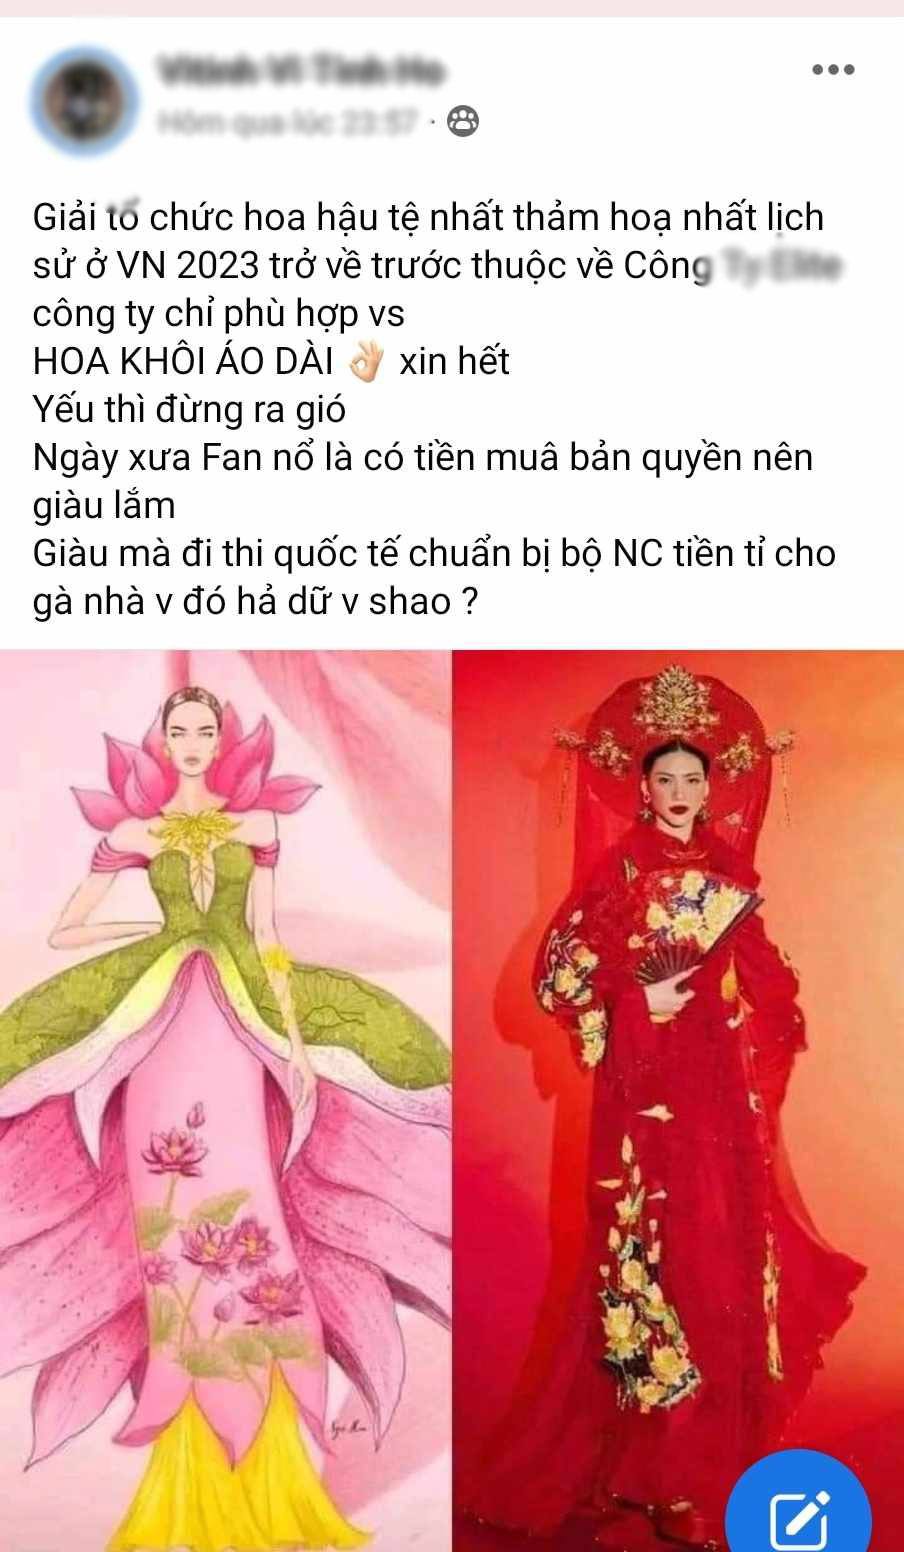 Trang phục dân tộc của Bùi Quỳnh Hoa gây tranh cãi, người đẹp chủ nhà bị tố 